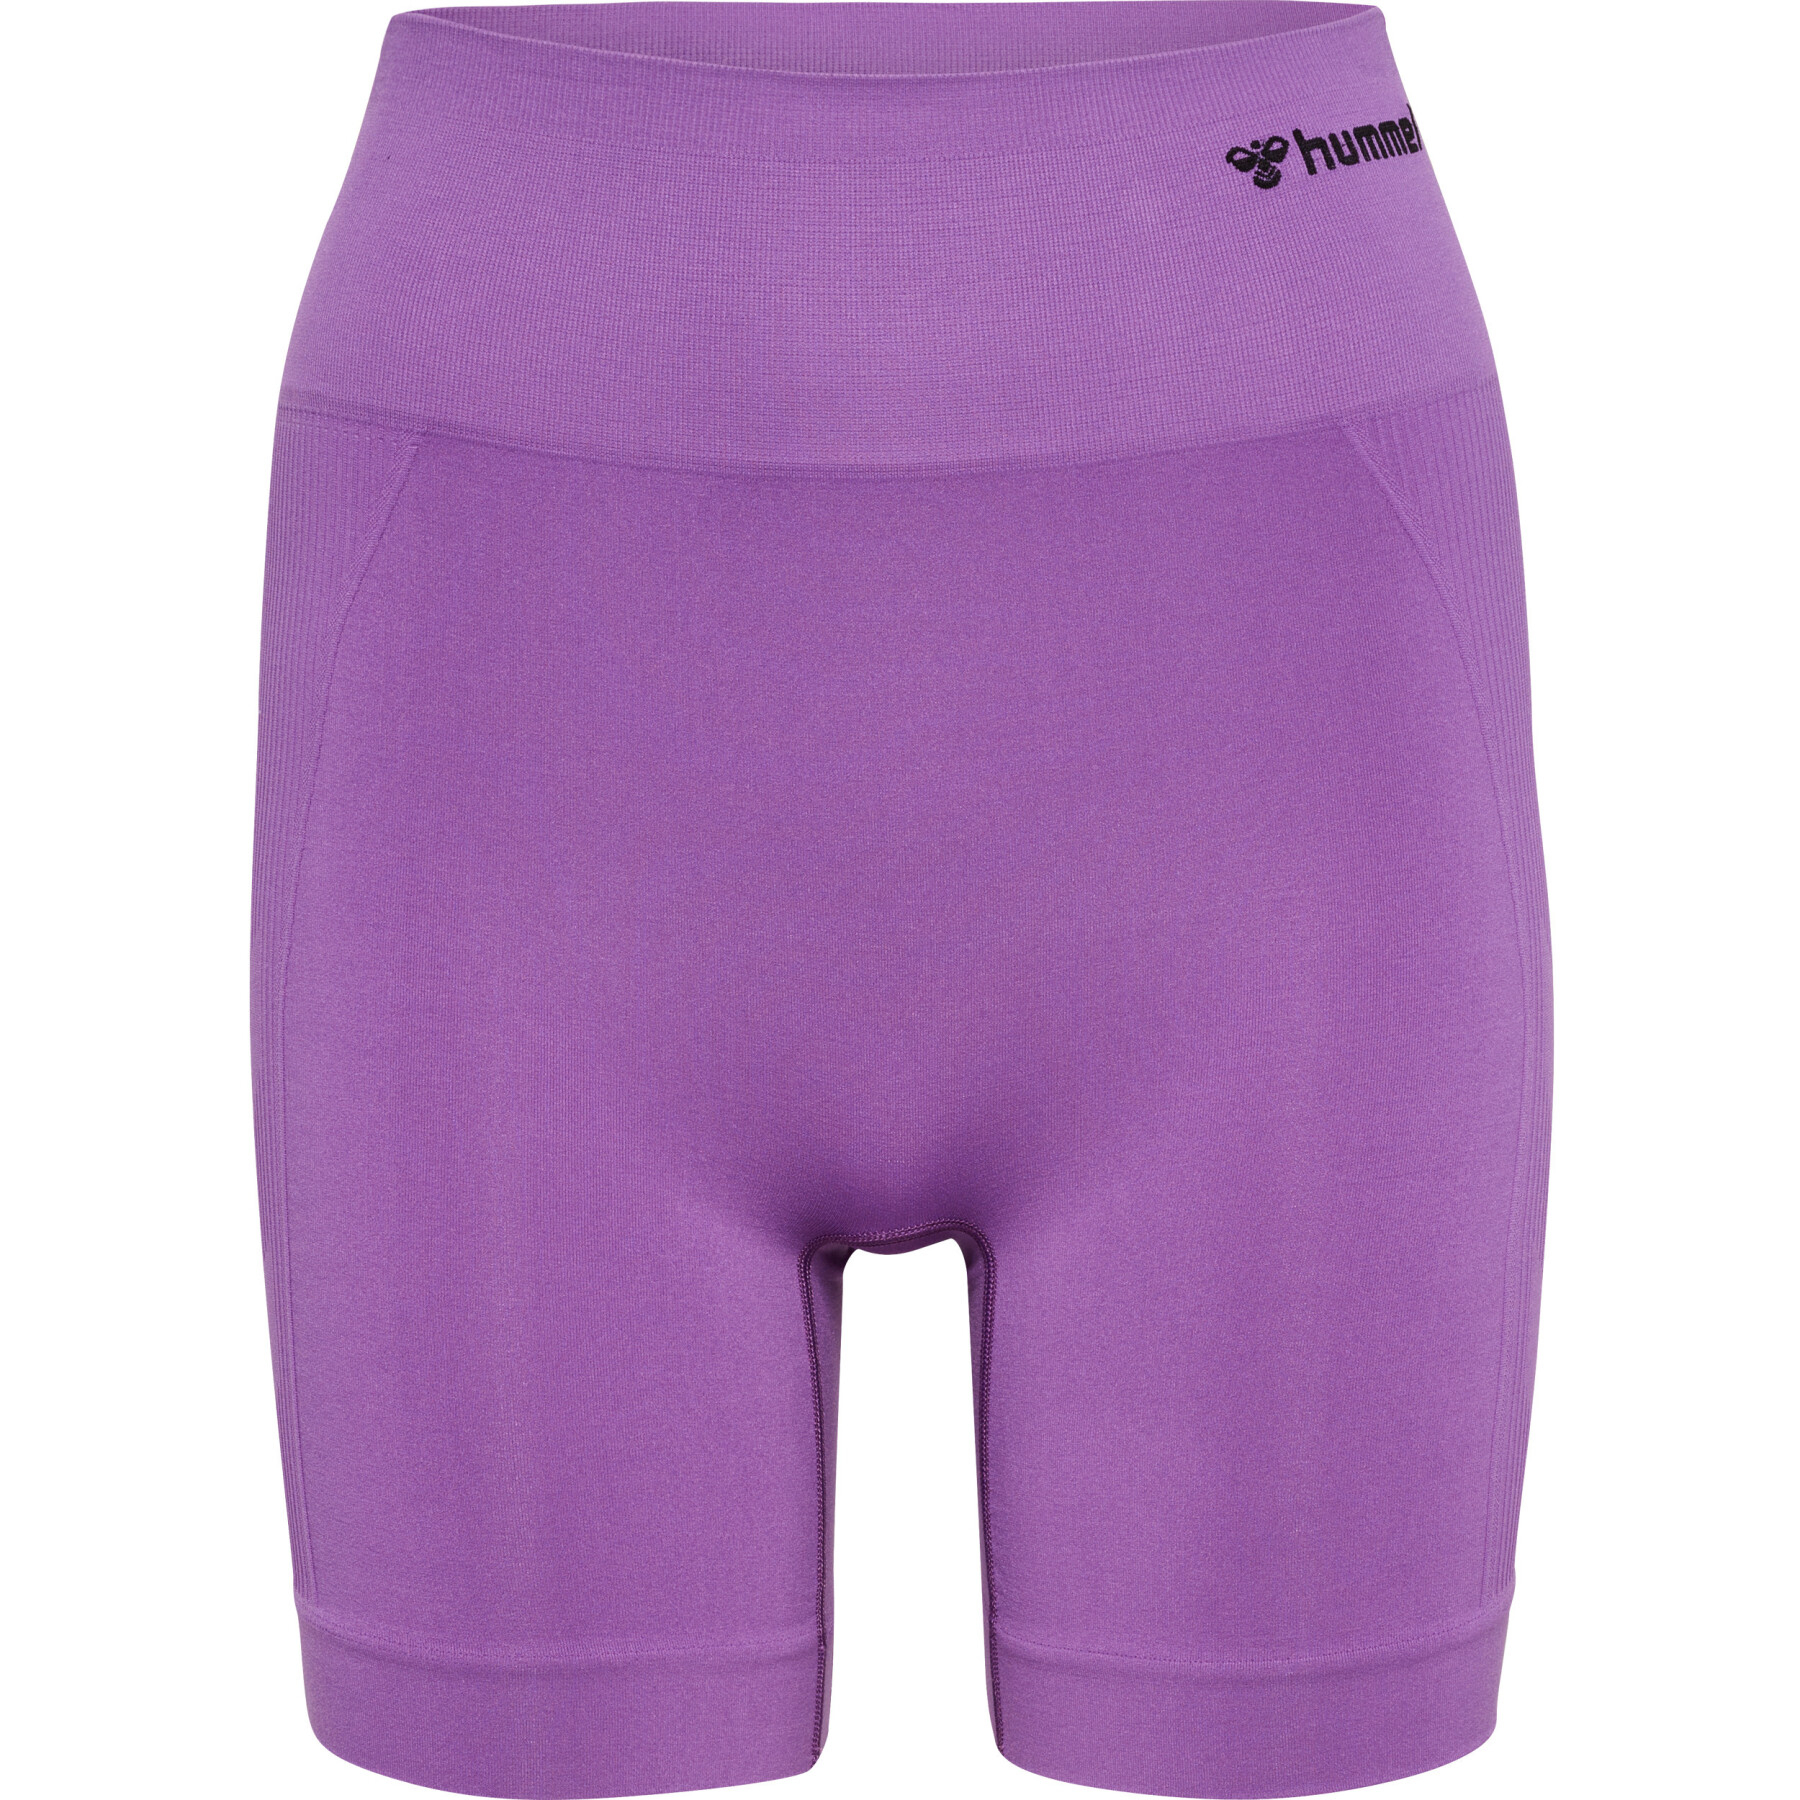 Naadloze shorts voor dames Hummel Tif